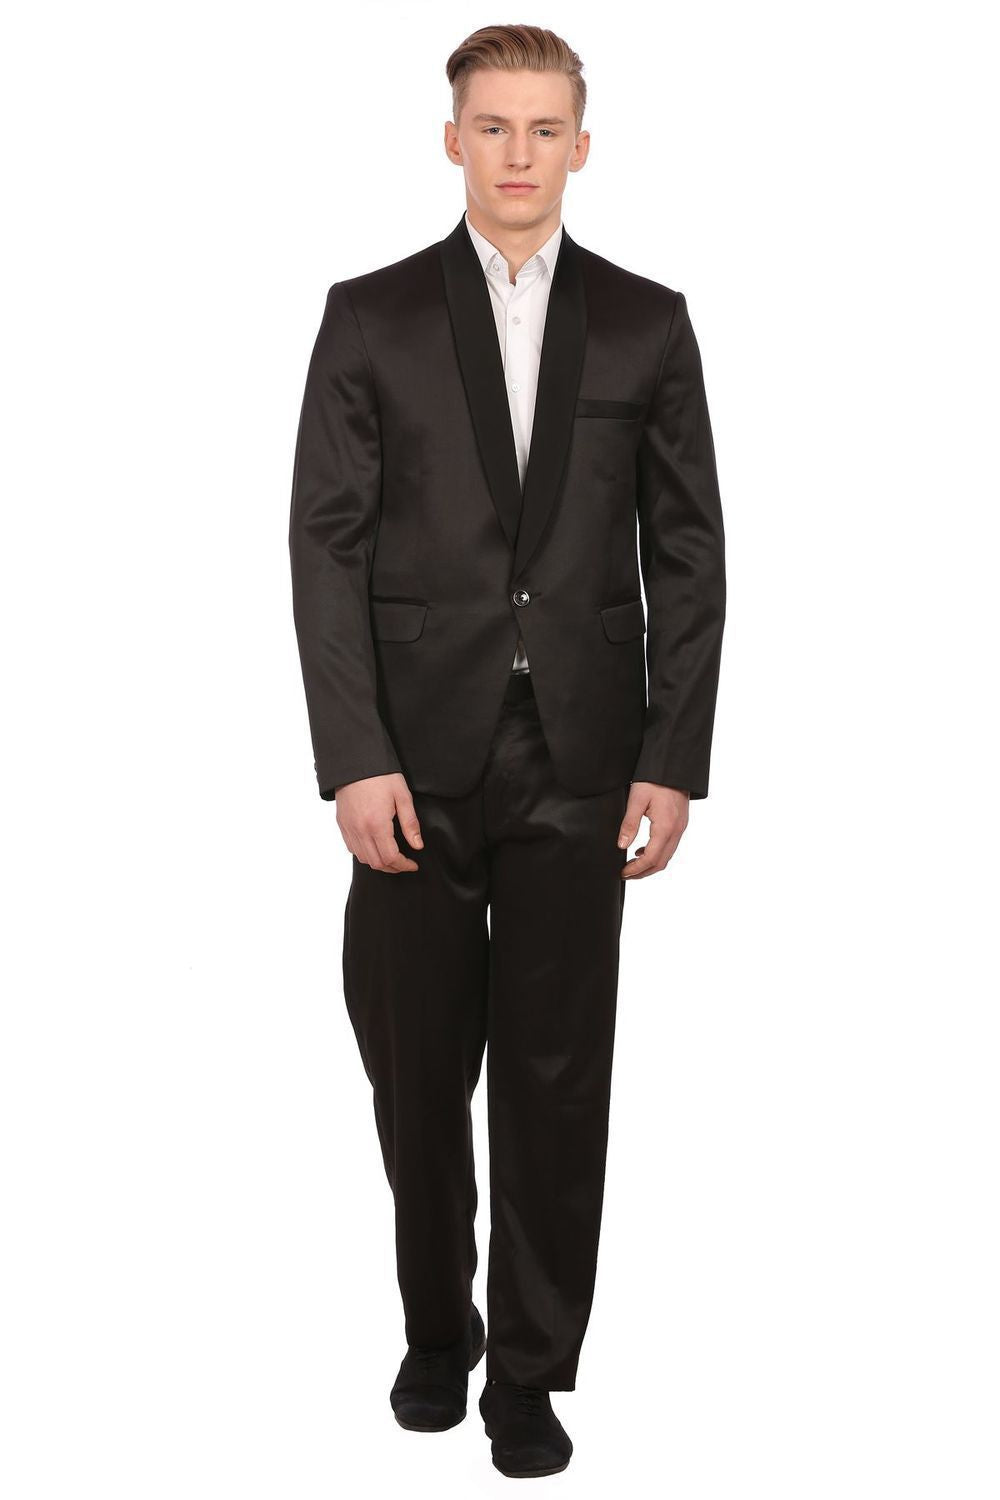 Poly Blend Black Tuxedo Suit